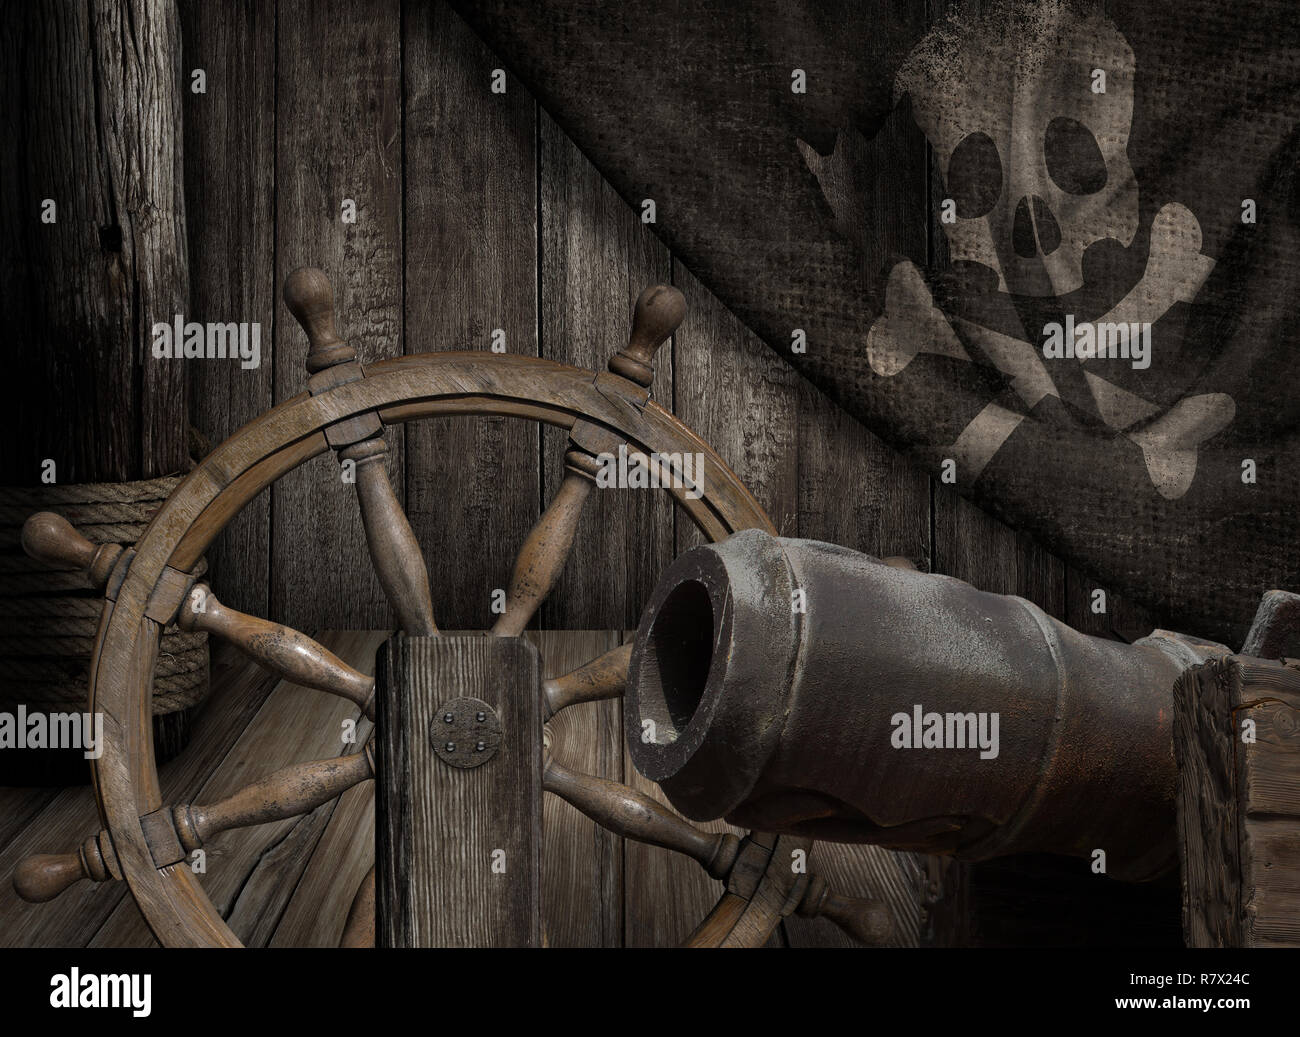 Bateau de pirates avec de vieux pont Jolly roger flag 3d illustration Banque D'Images